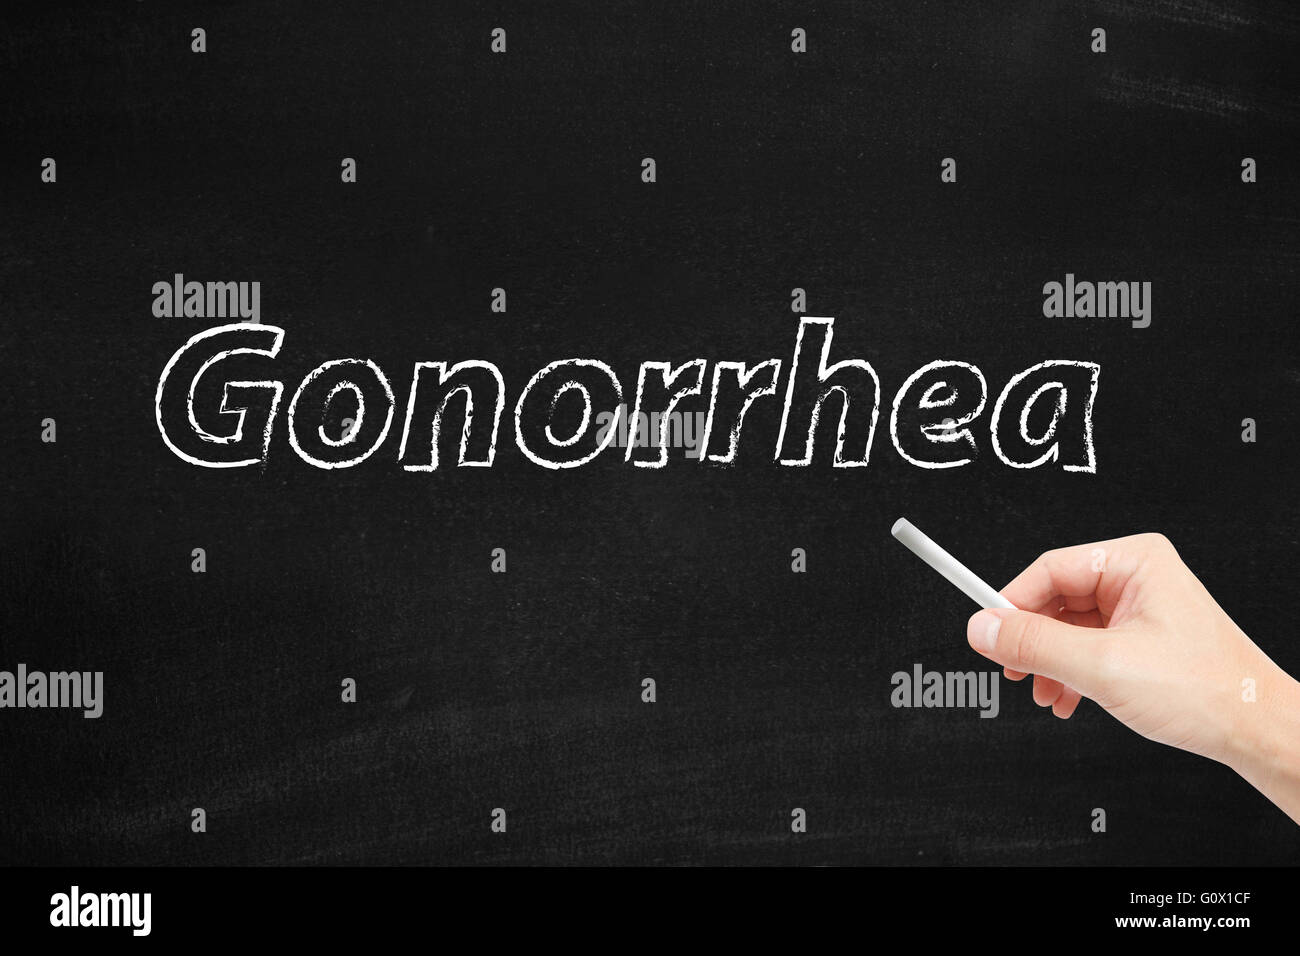 Gonorrhea written on a blackboard Stock Photo